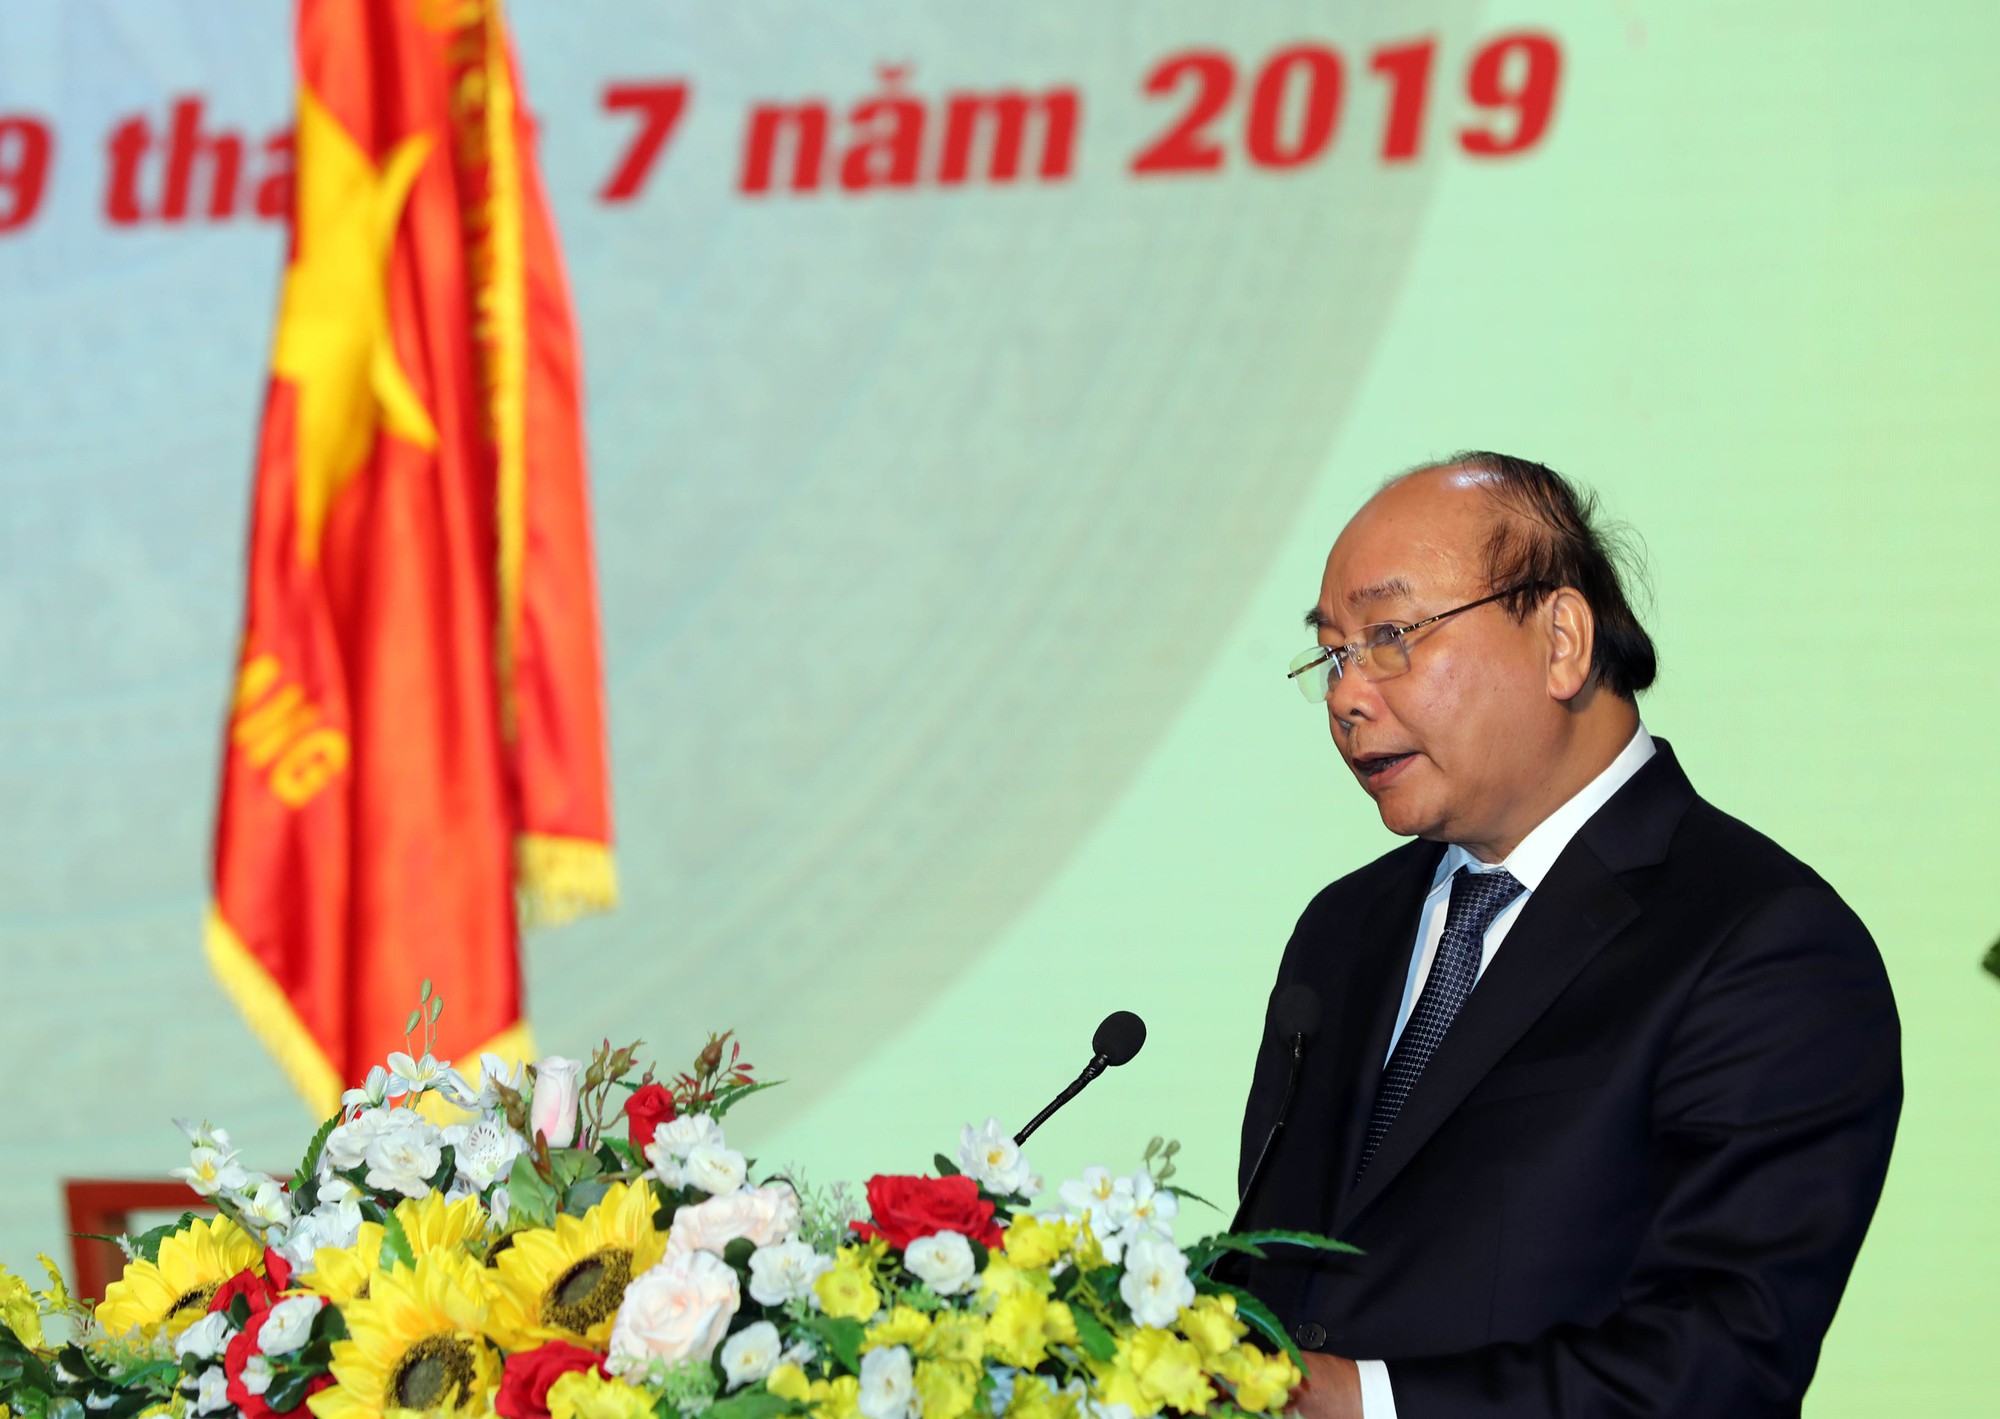 Thủ tướng Nguyễn Xuân Phúc cùng báo Người Lao Động trao cờ Tổ quốc cho ngư dân Kiên Giang - Ảnh 4.